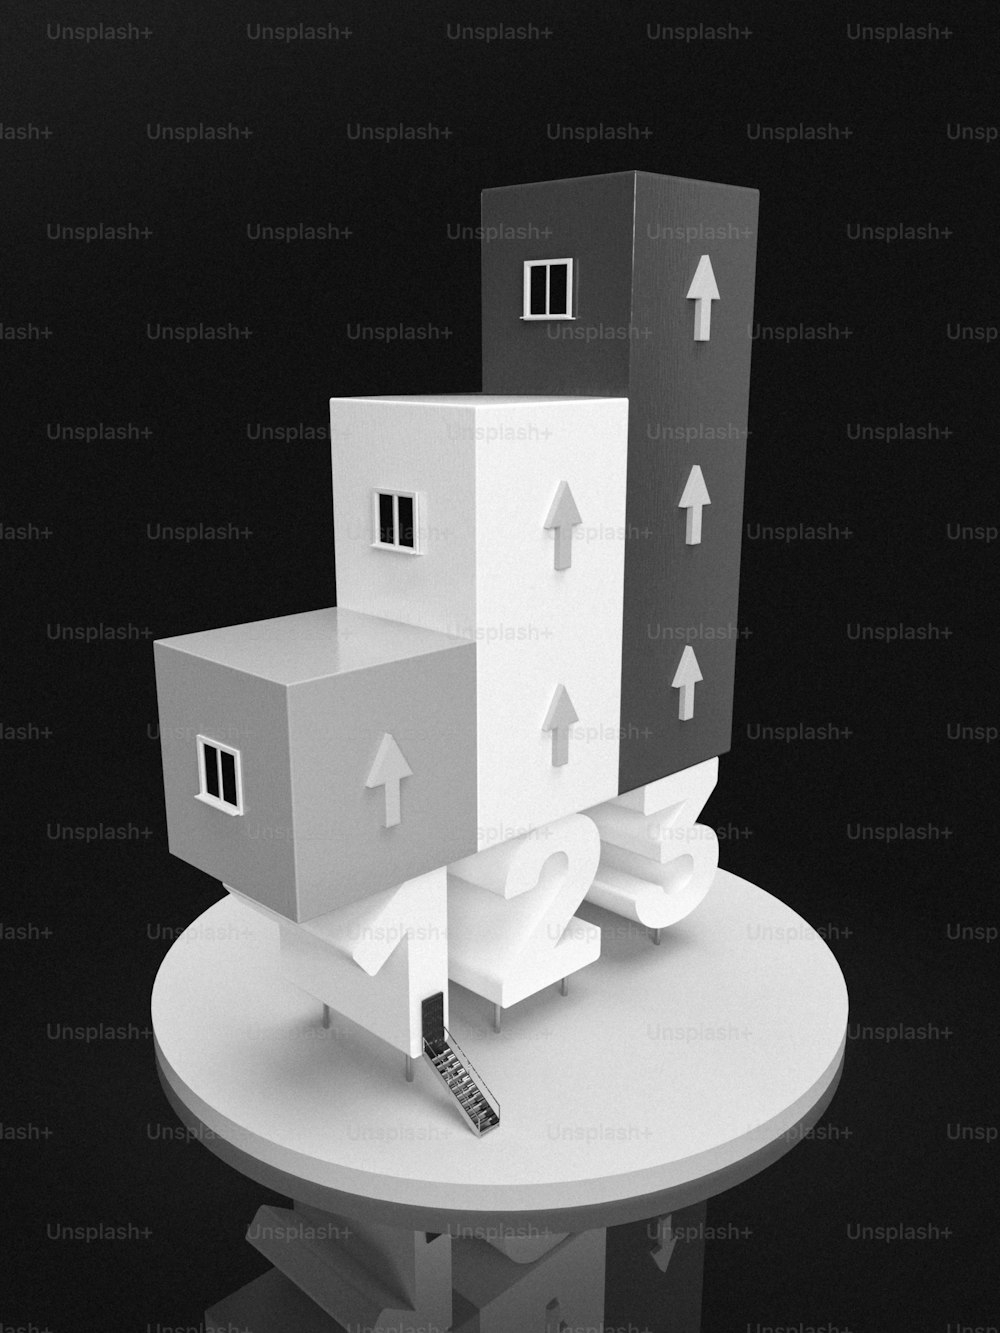 Una foto en blanco y negro de un modelo de una casa